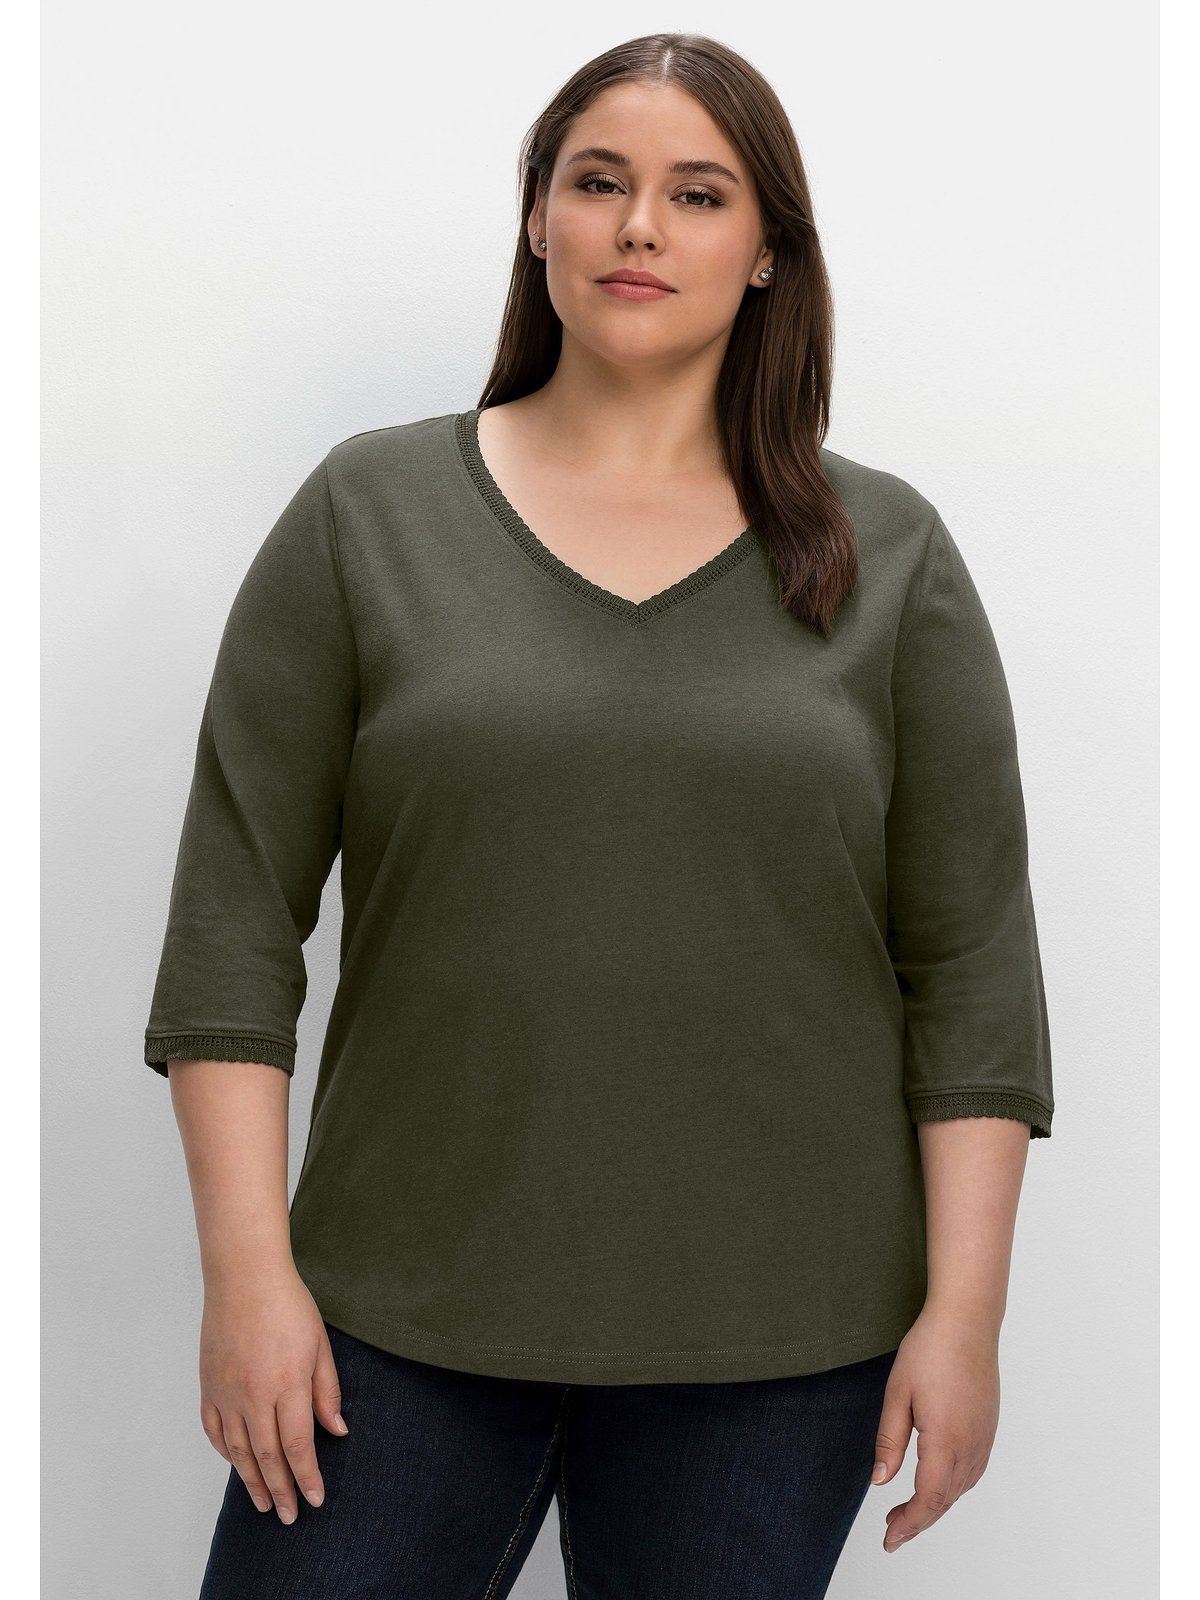 Leerung Sheego 3/4-Arm-Shirt Große Größen mit Bogenkante, in leichter A-Linie dunkeloliv